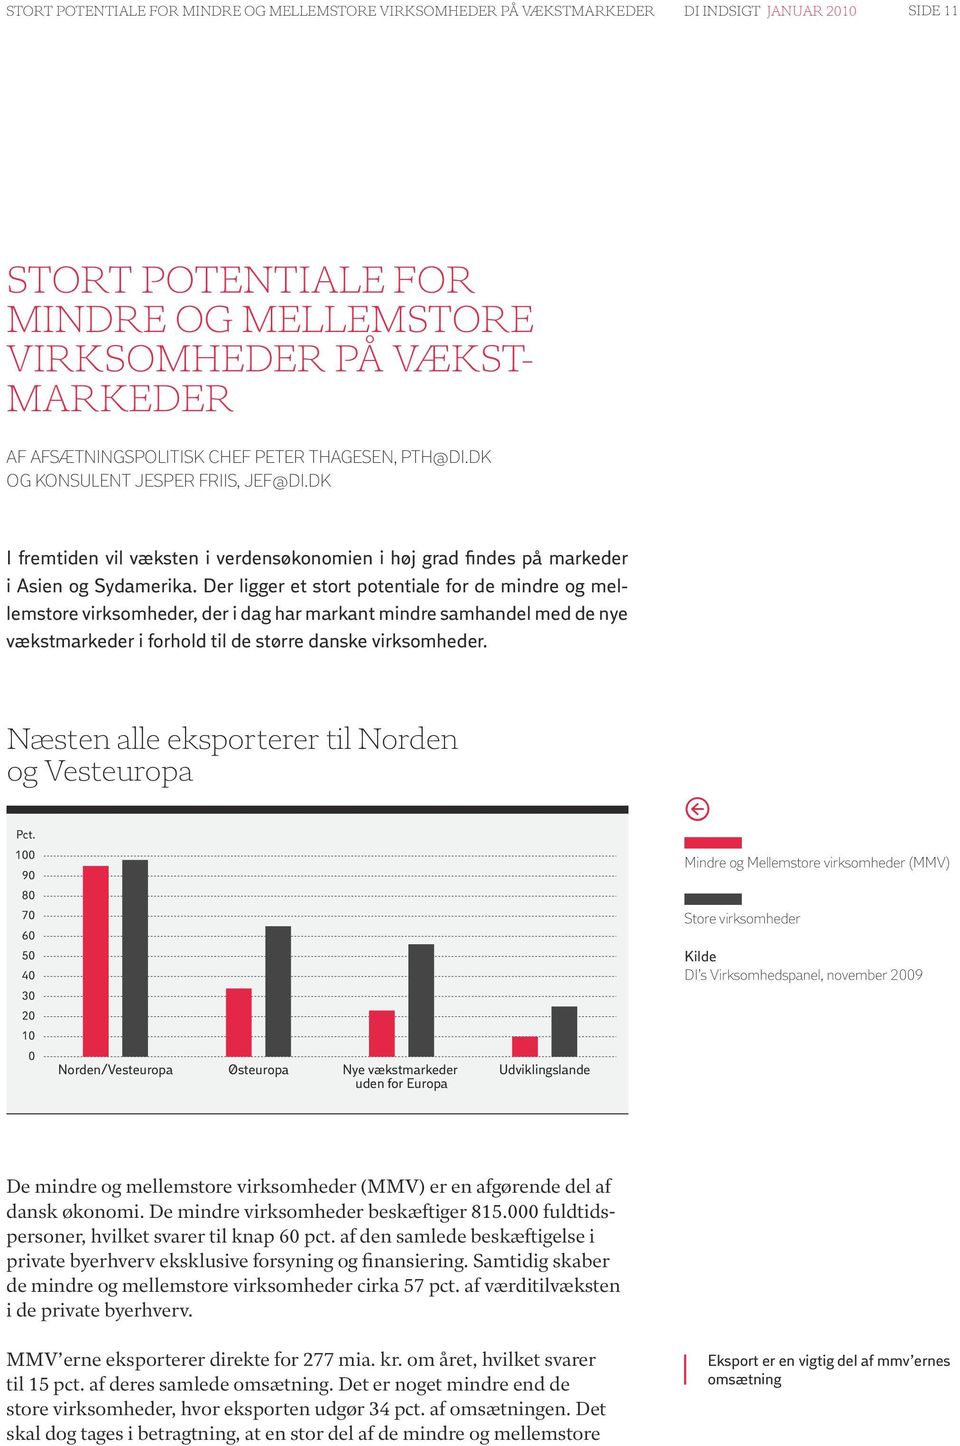 Der ligger et stort potentiale for de mindre og mellemstore virksomheder, der i dag har markant mindre samhandel med de nye vækstmarkeder i forhold til de større danske virksomheder.